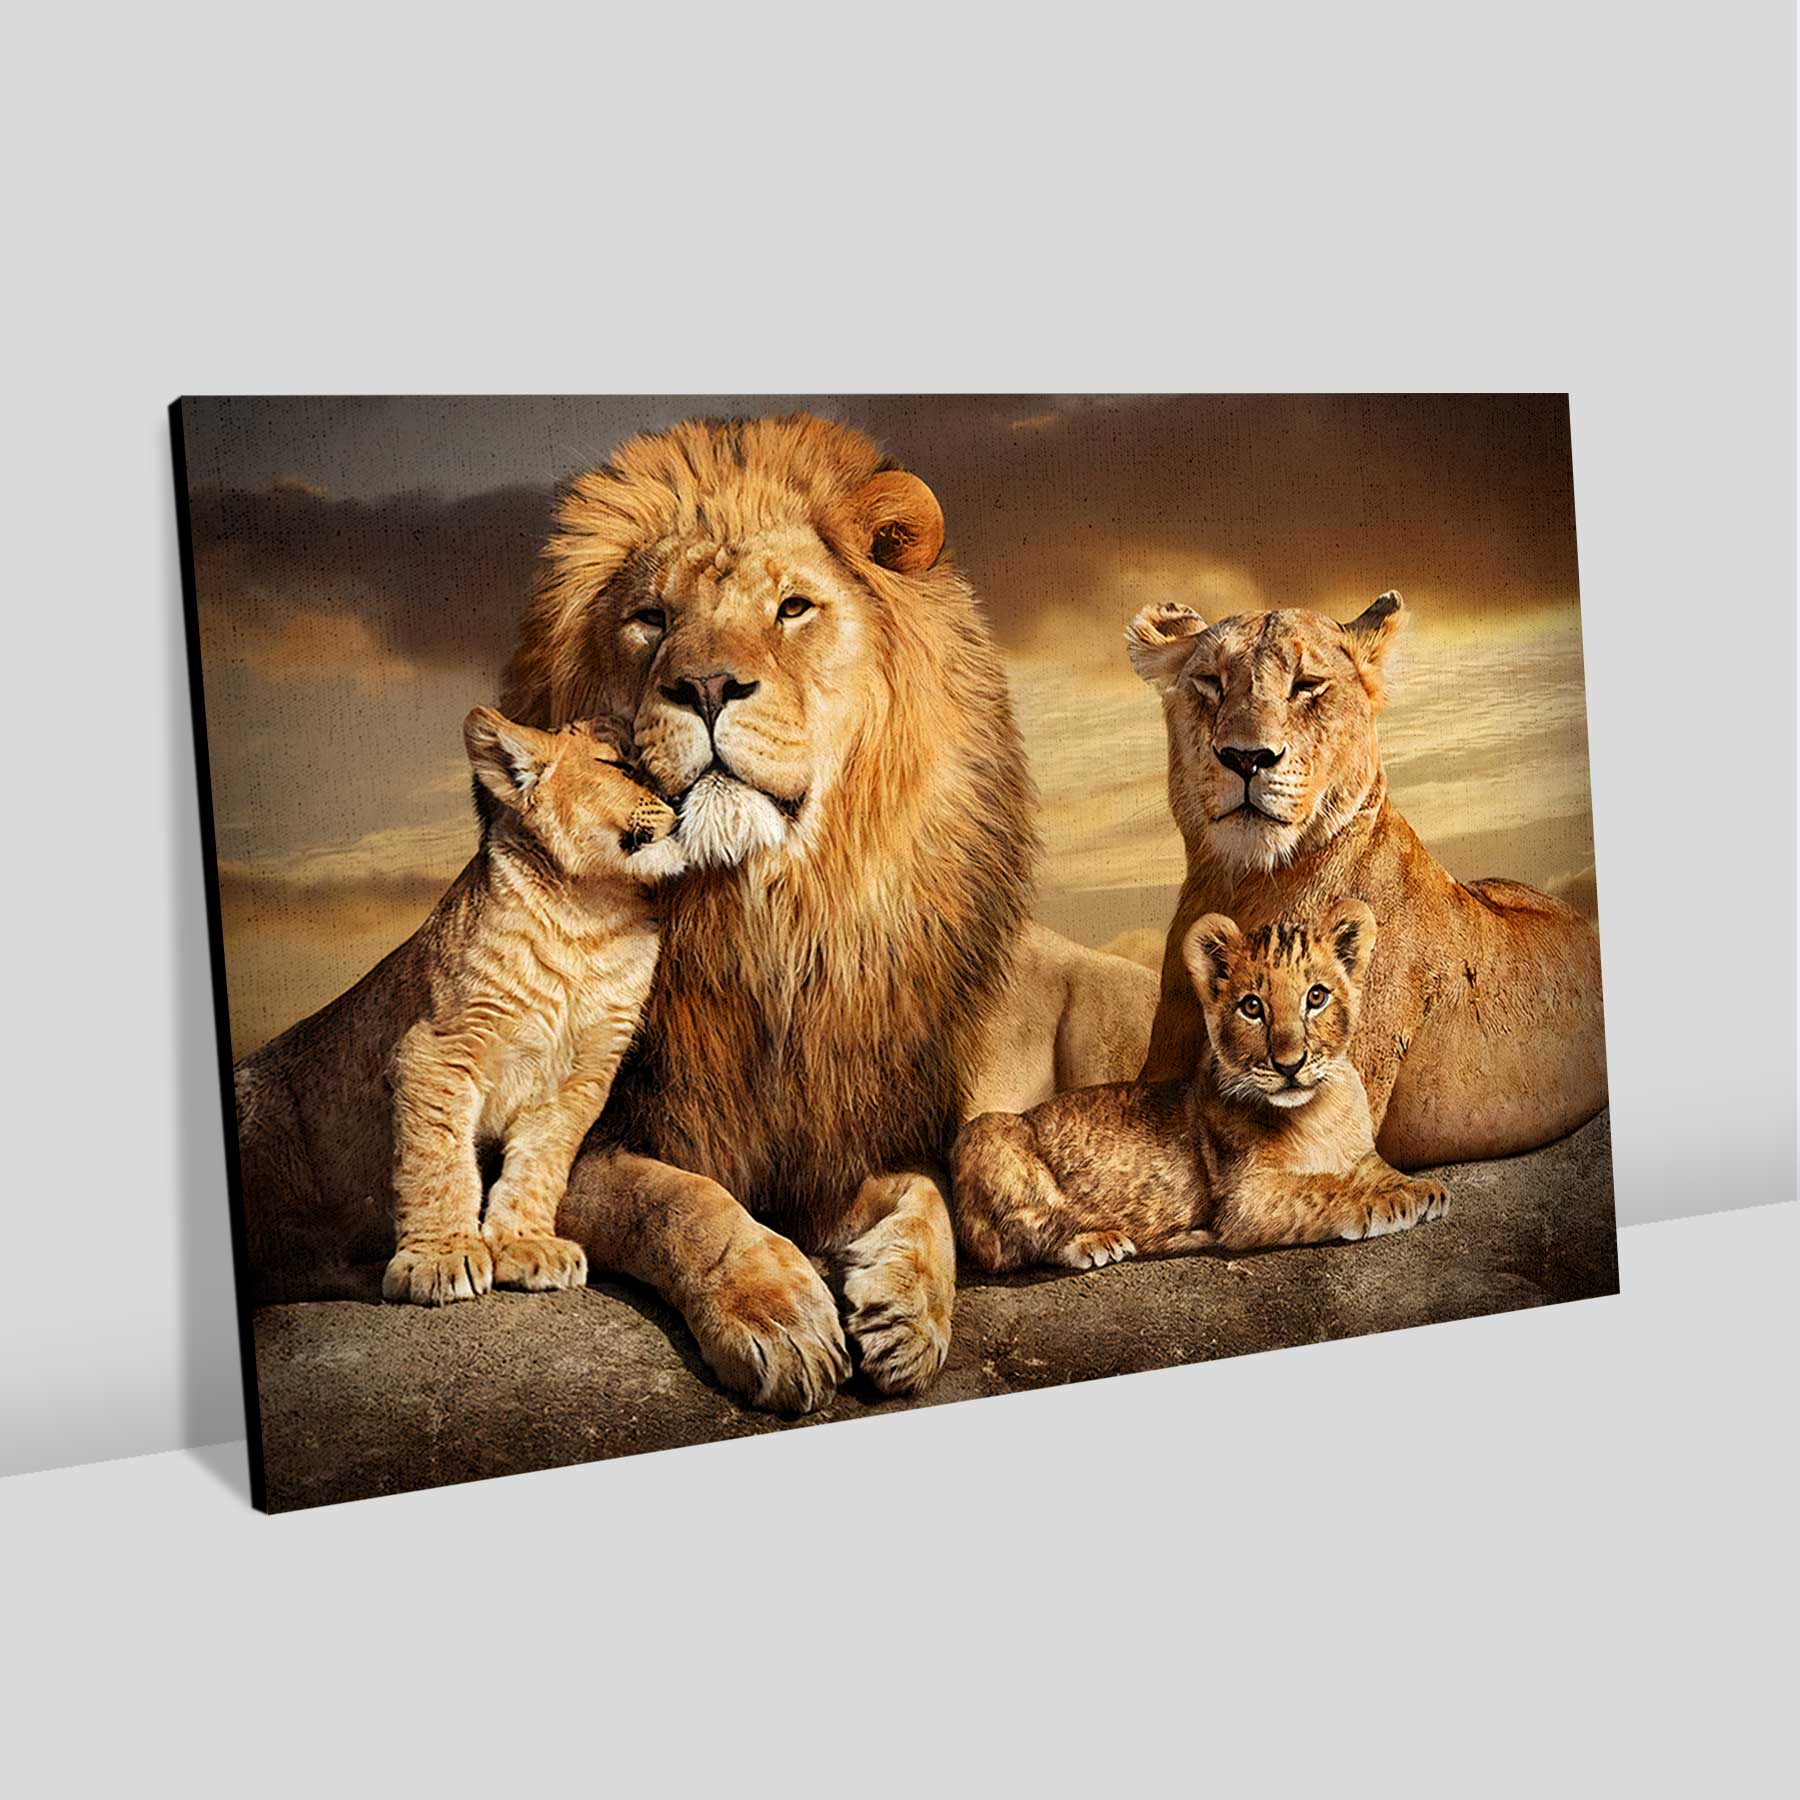 Quadro Retangular  - Família de leões com 2 filhotes